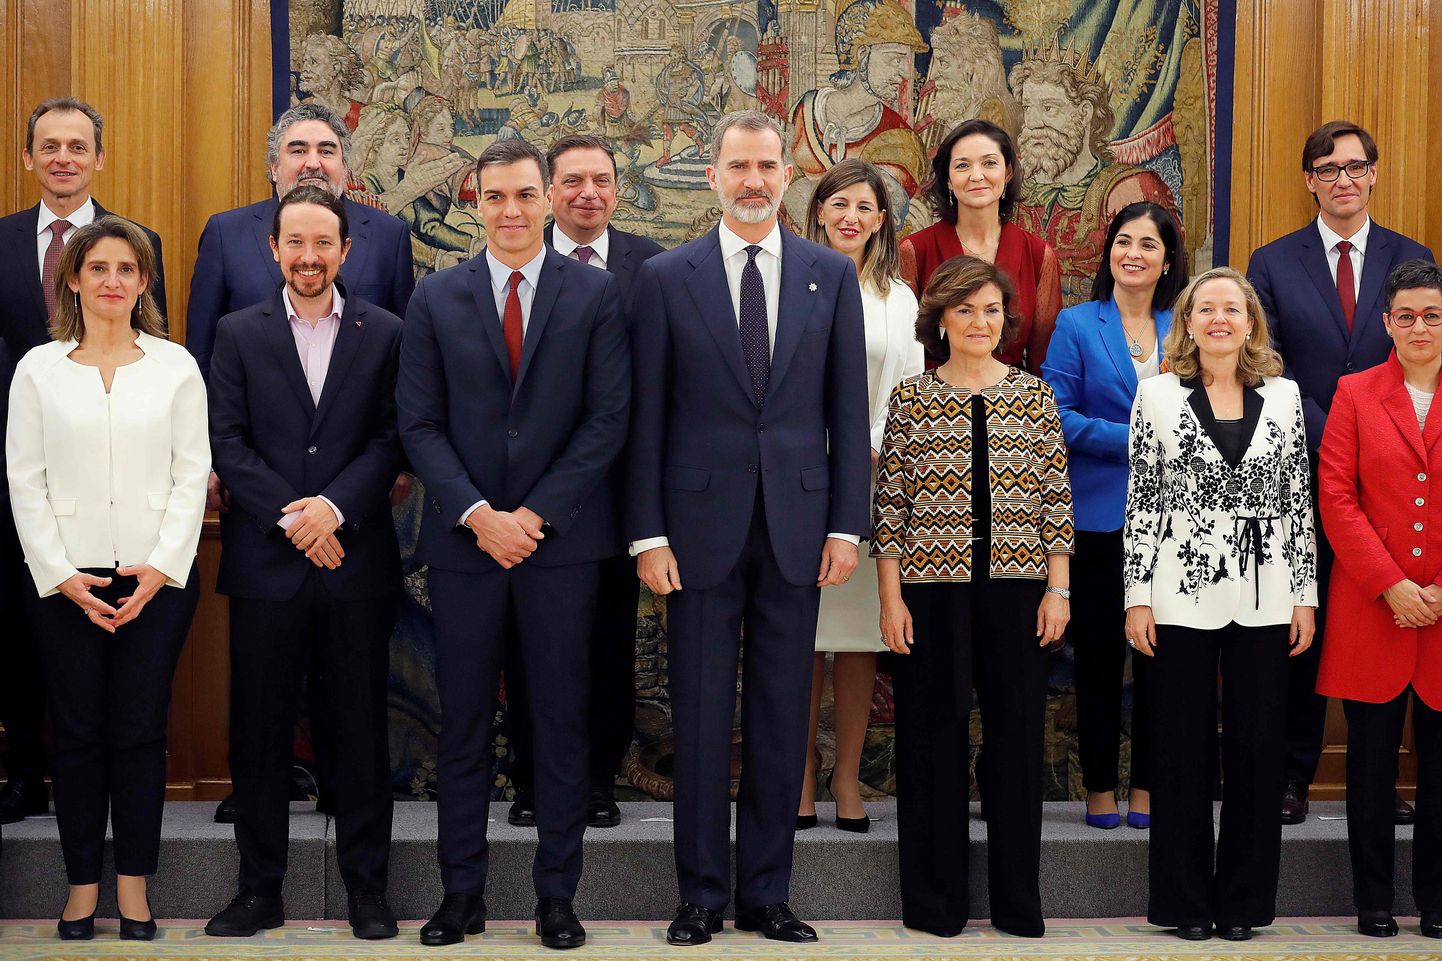 Hispaania kuningas Felipe VI poseerib koos peaminister Pedro Sáncheze uue koalitsioonivalitsuse liikmetega.